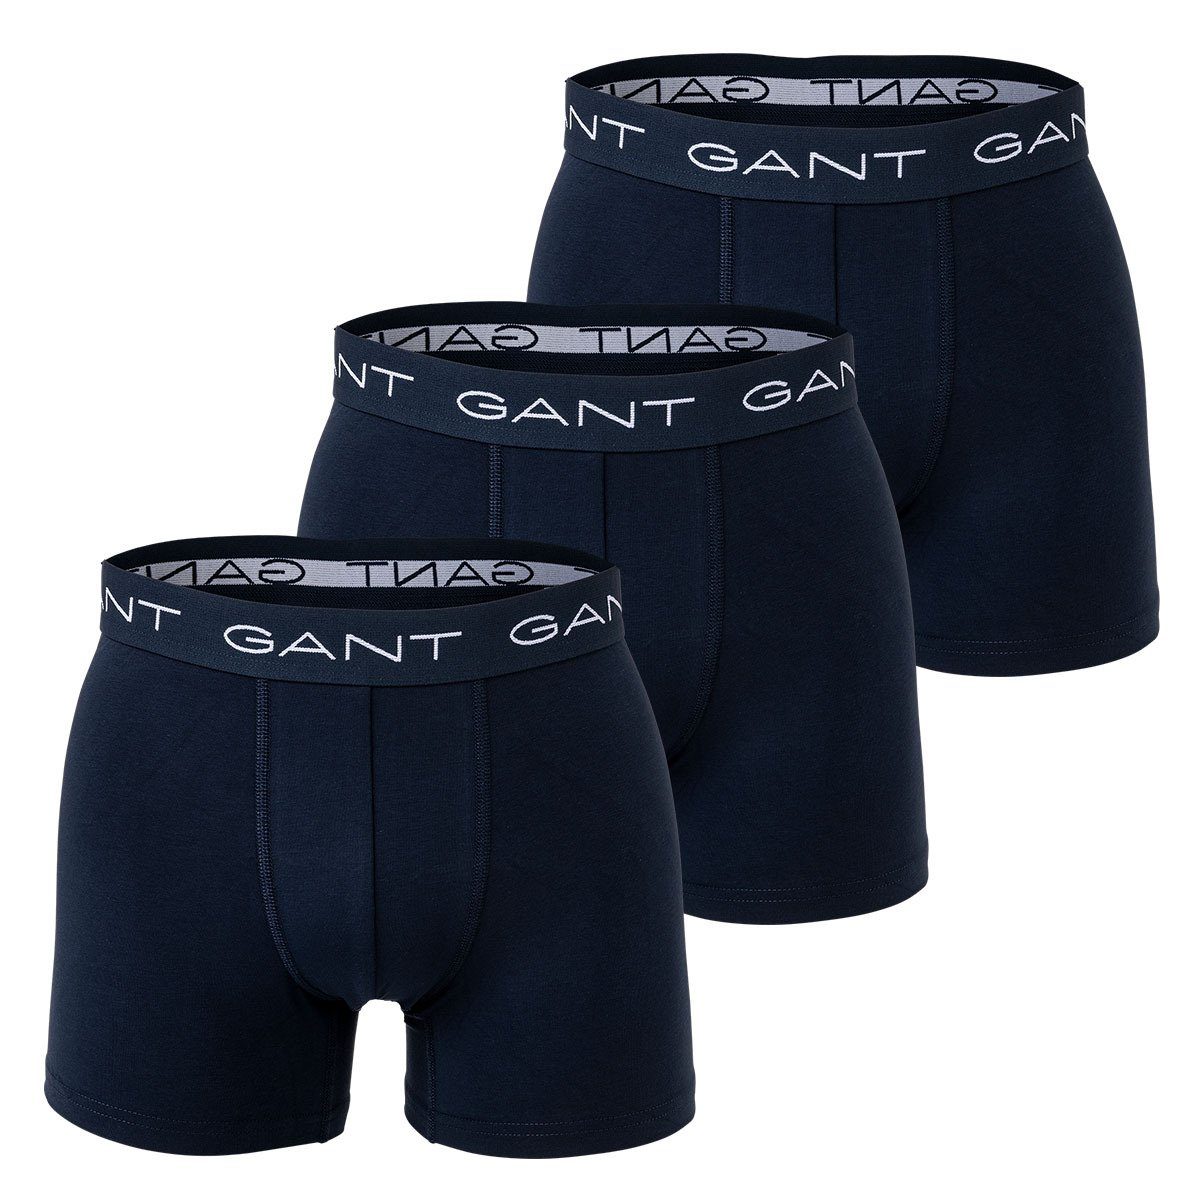 Gant Boxer Herren Boxer Shorts, 3er Pack - Boxer Briefs Marine